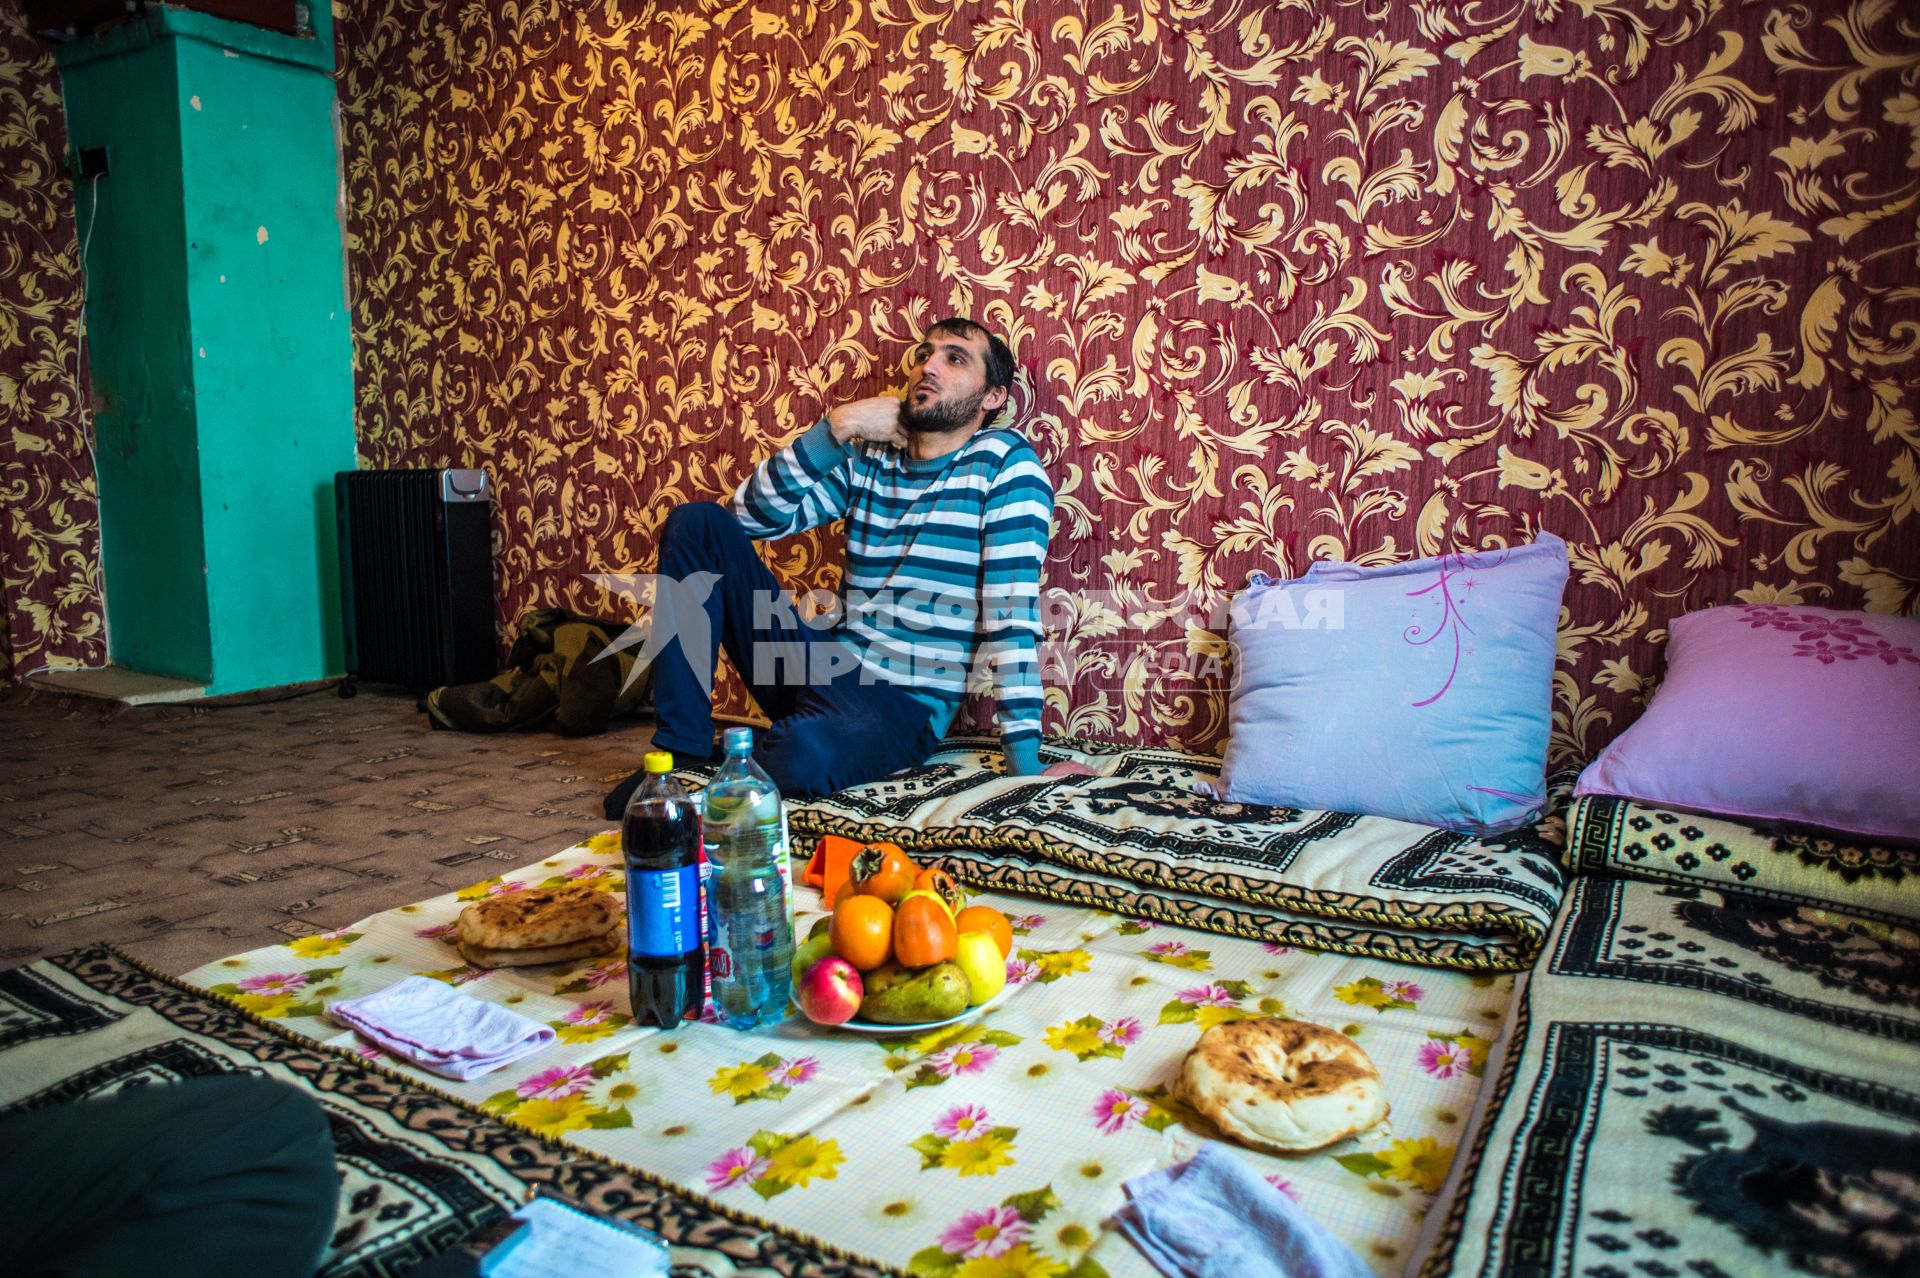 Тверская область, Рождествено. В квартире таджикских мигрантов.